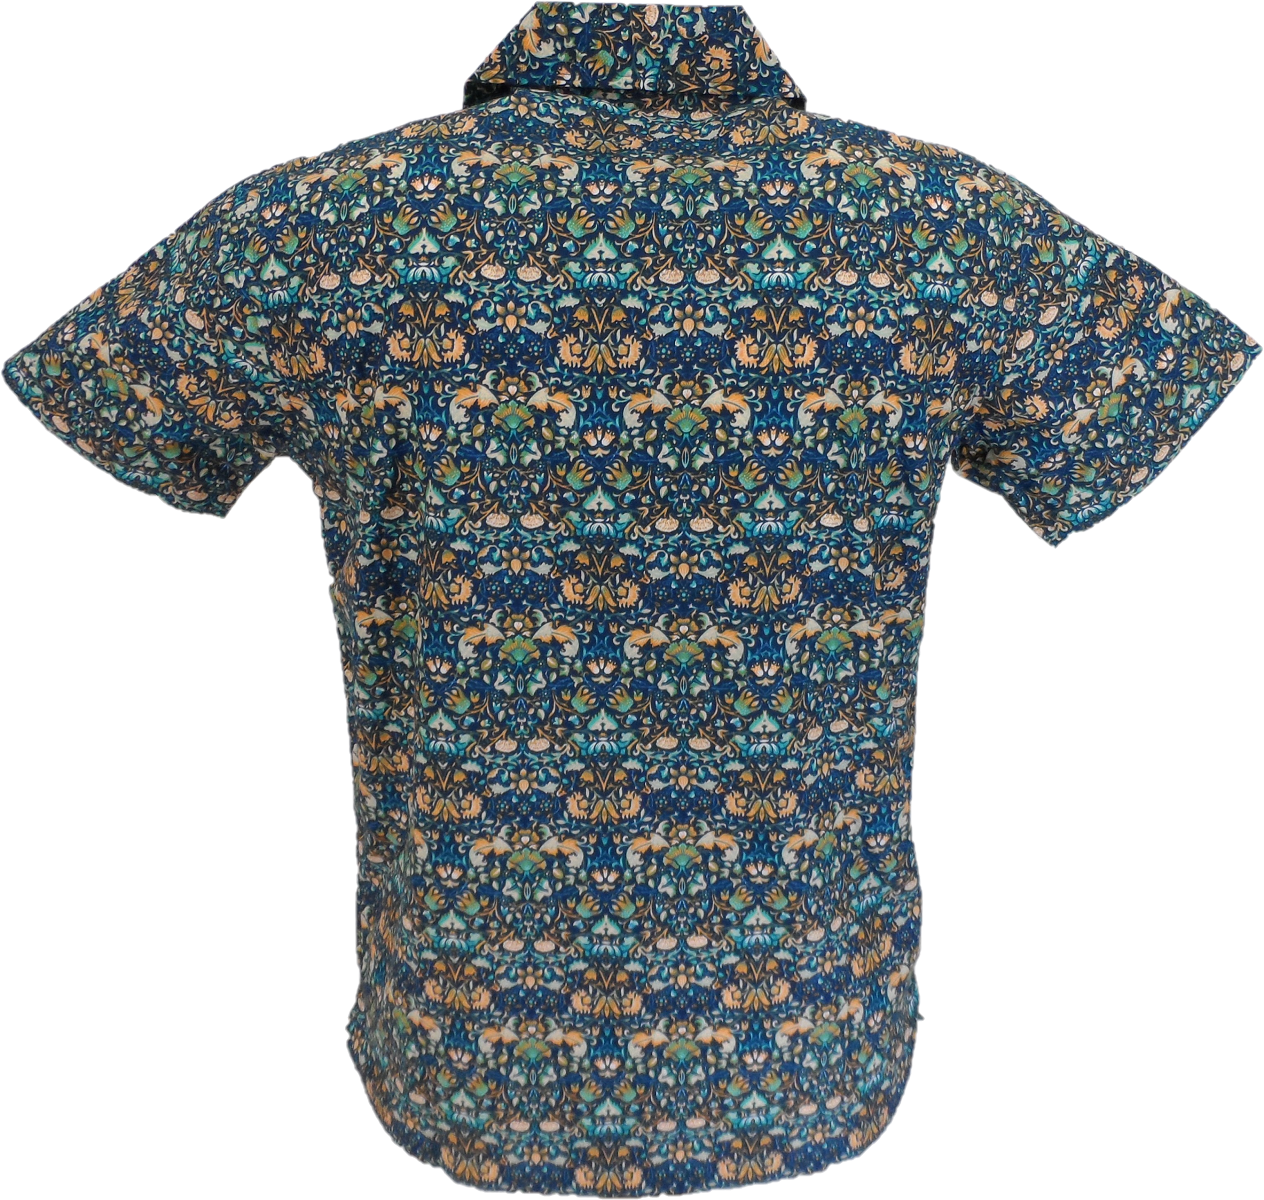 Camisa hawaiana retro azul paisley multicolor Relco para hombre